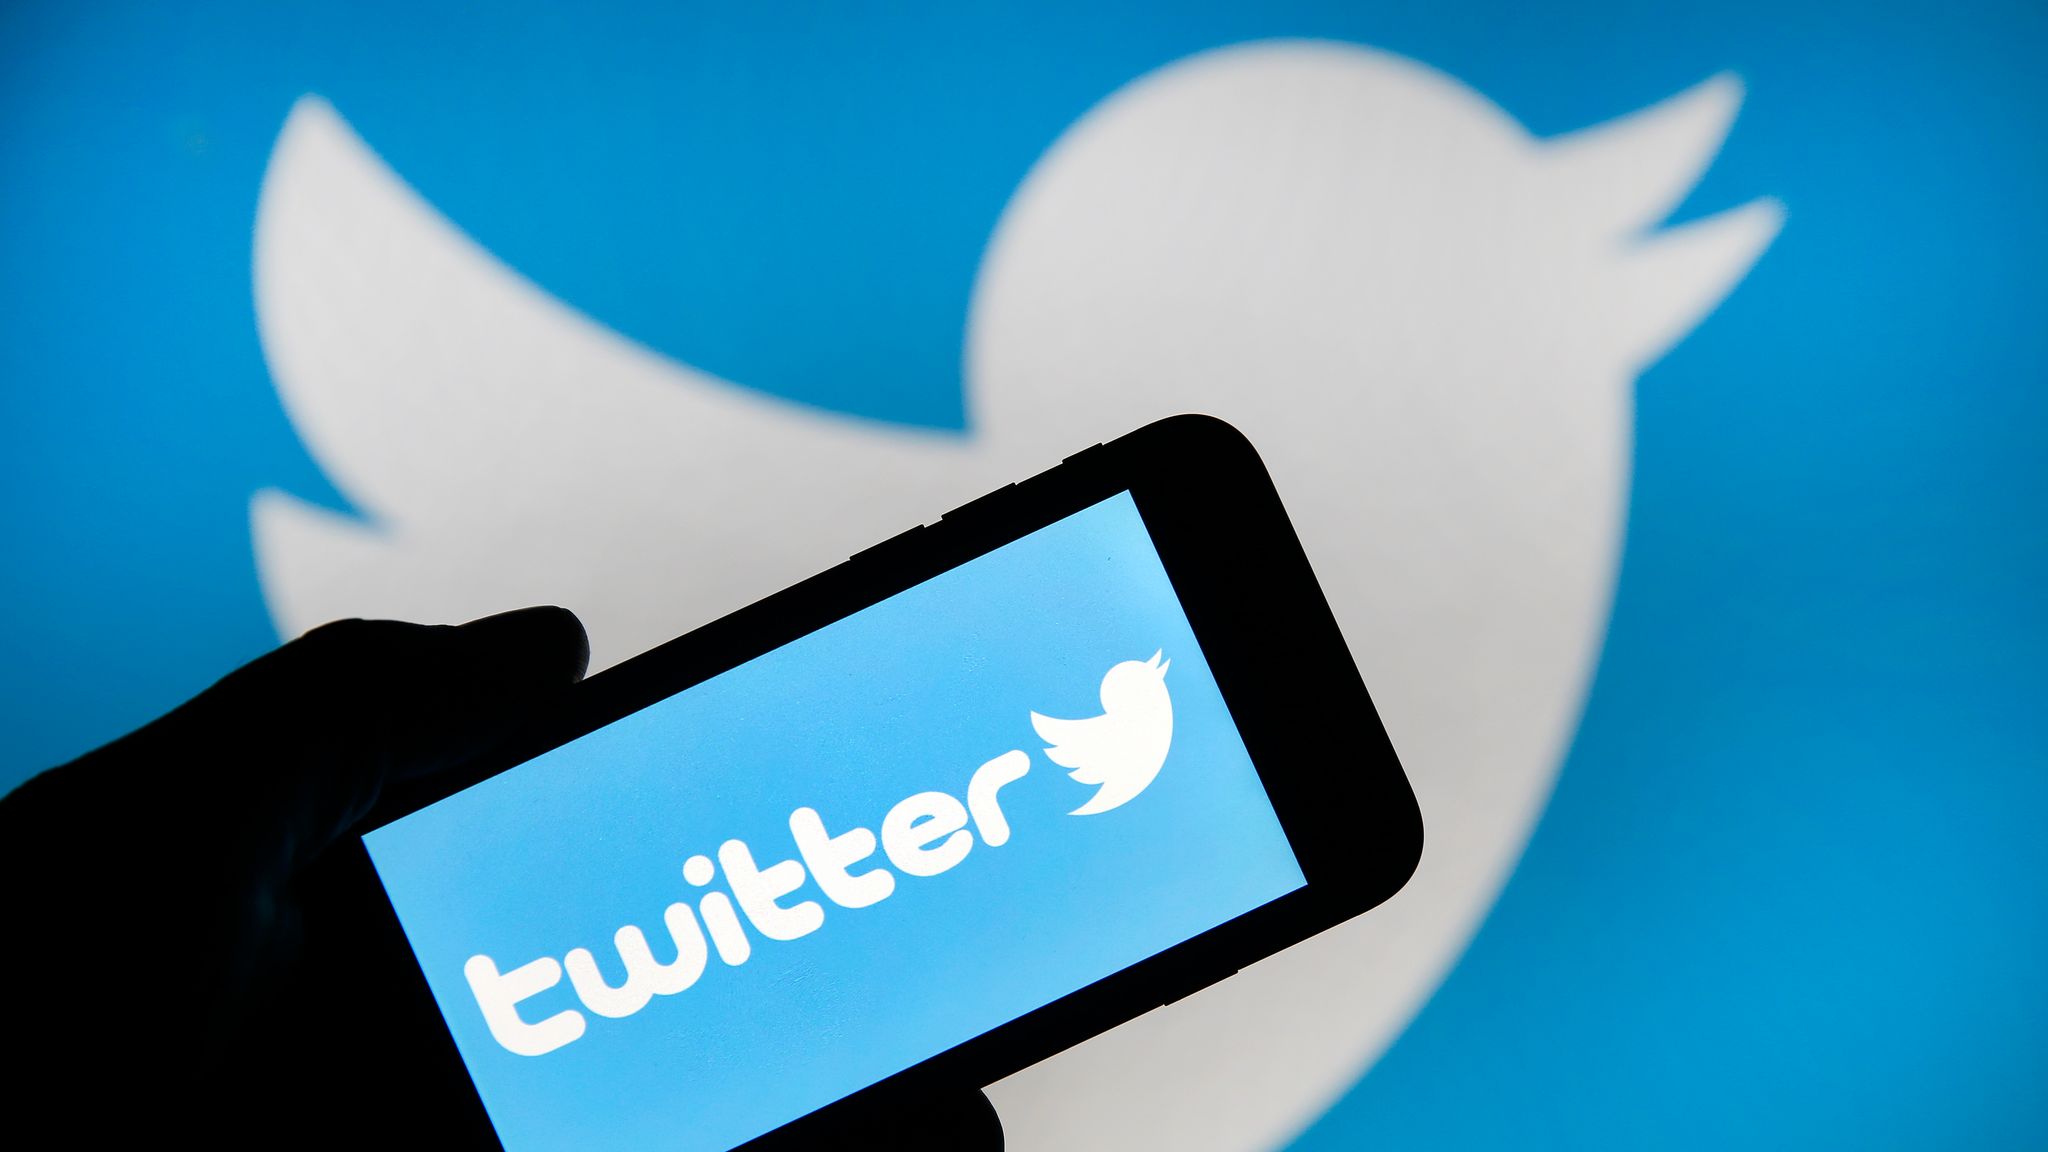 Twitter a erişim engeli; VPN talebi yüzde 186 oranında arttı